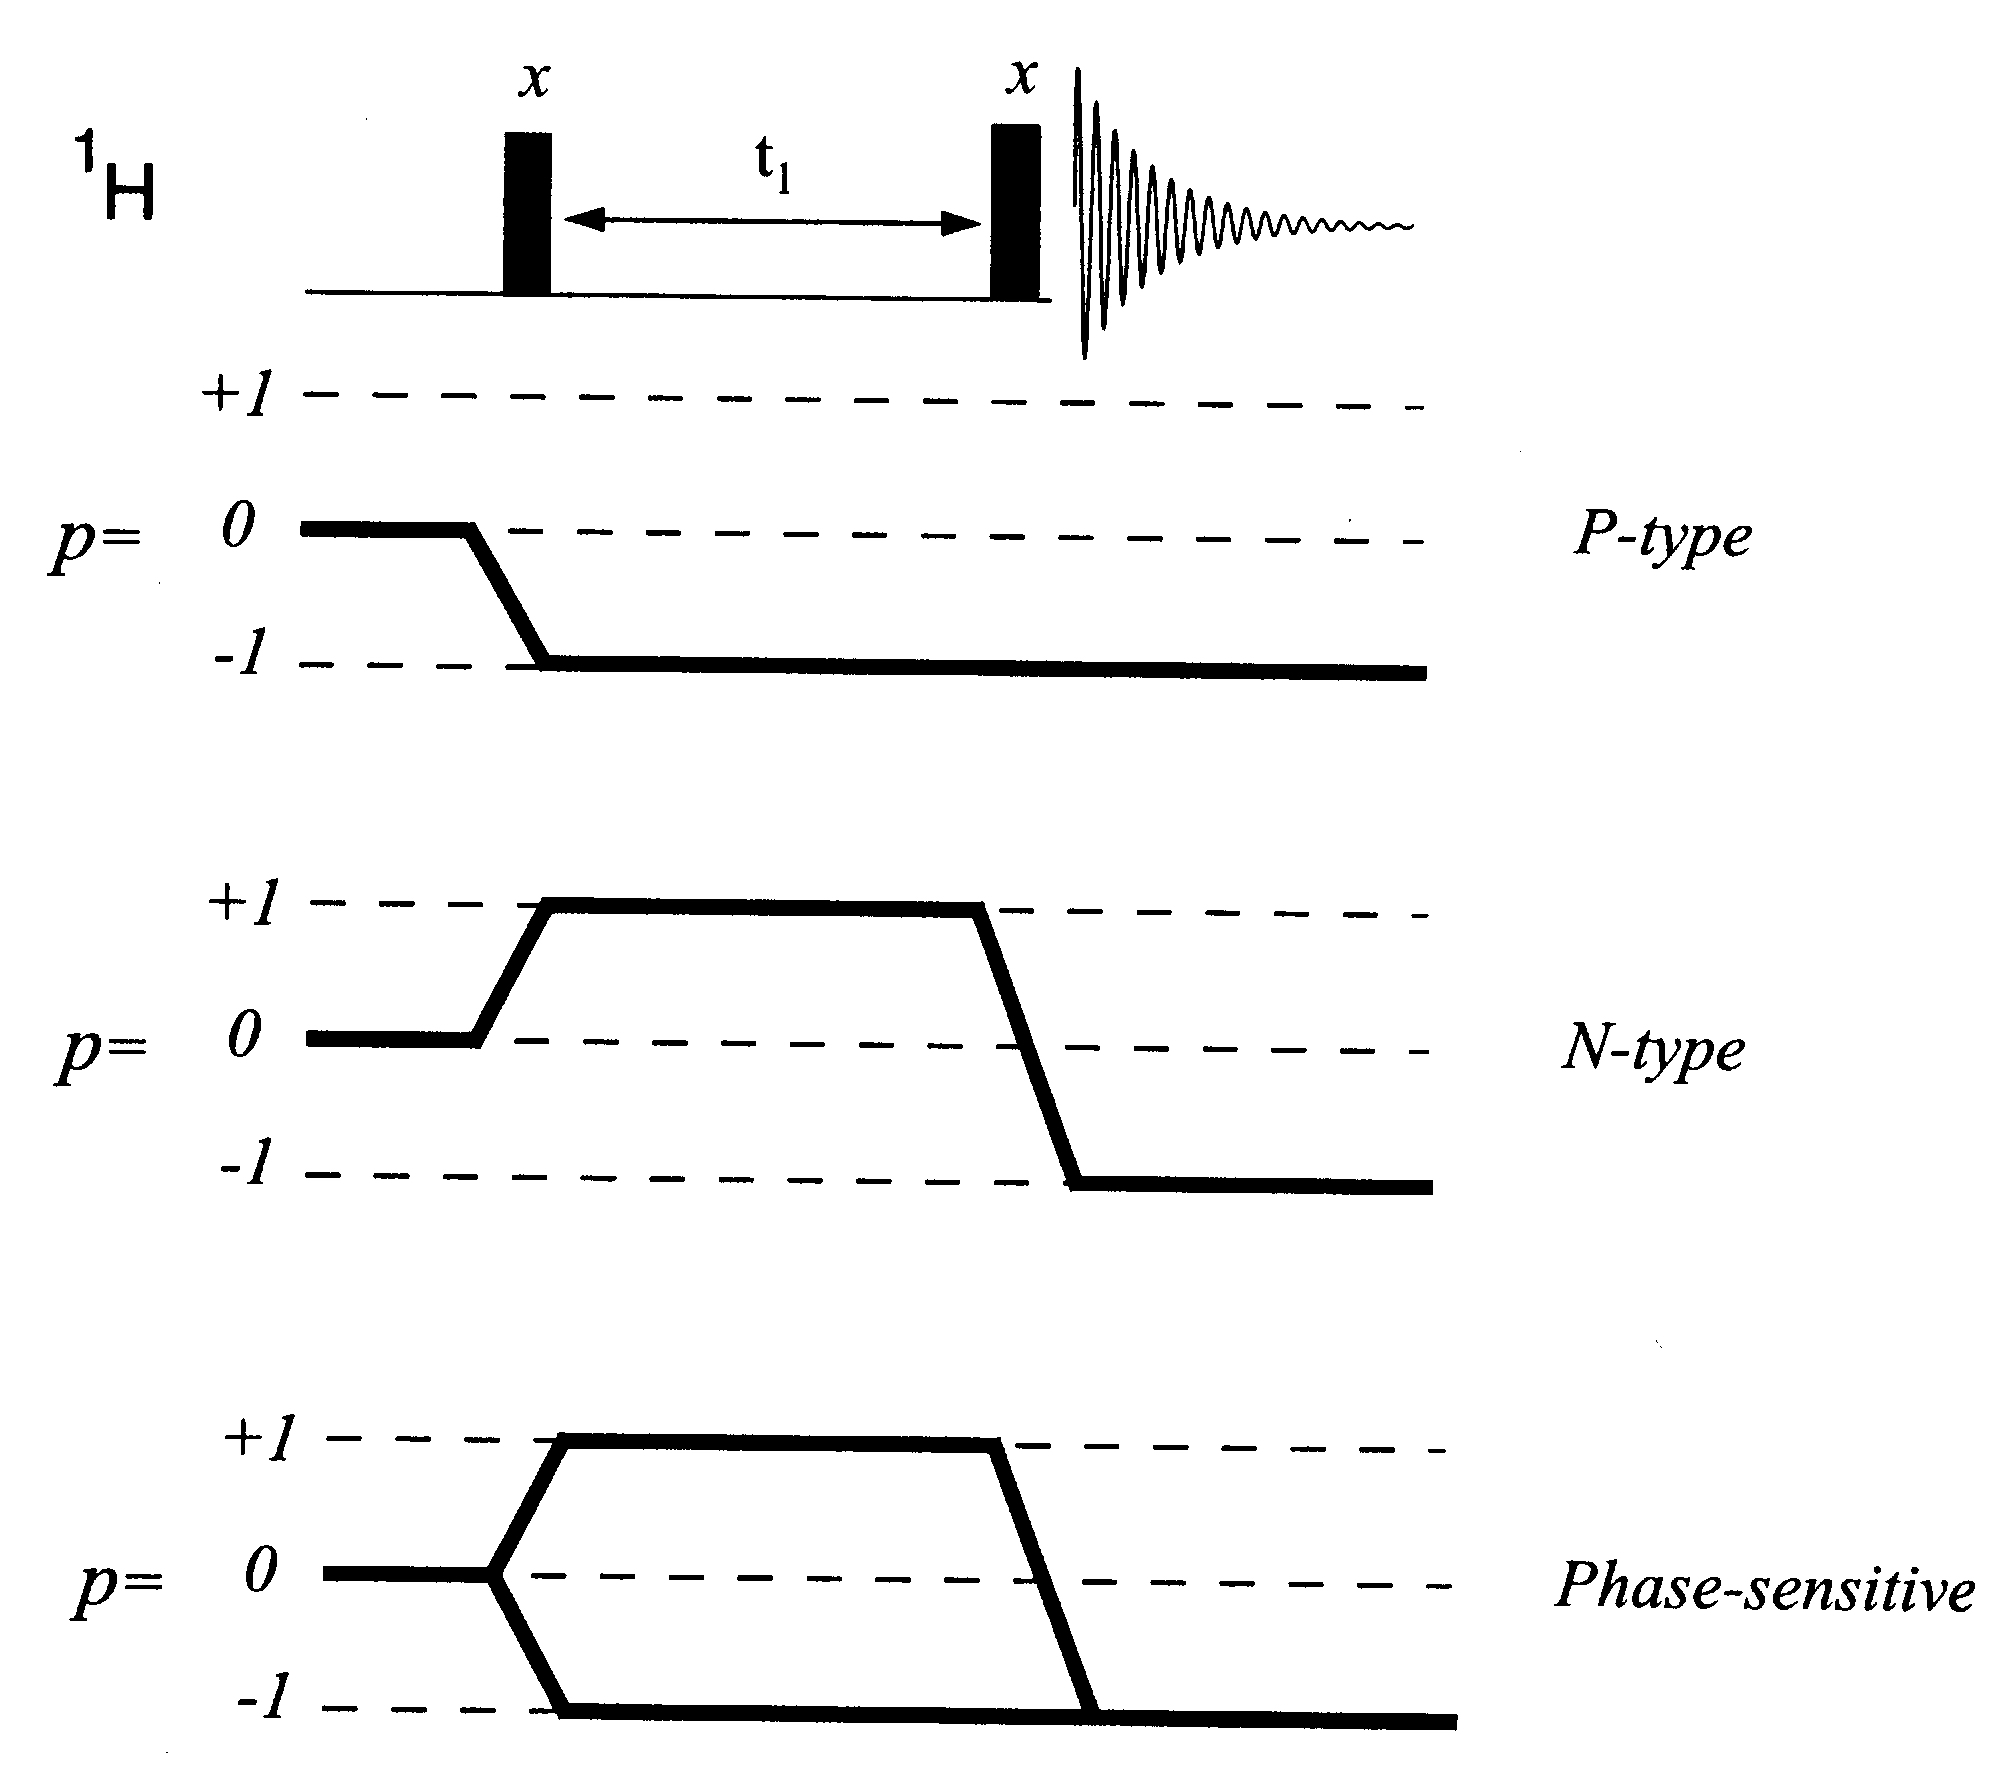 A kvadratúr detekció során rendszerint a -1 es p szintet (állapotot) választják ki a mérés céljaira. A szaggatott vonallal jelzett mágnesezettséget nem használják.